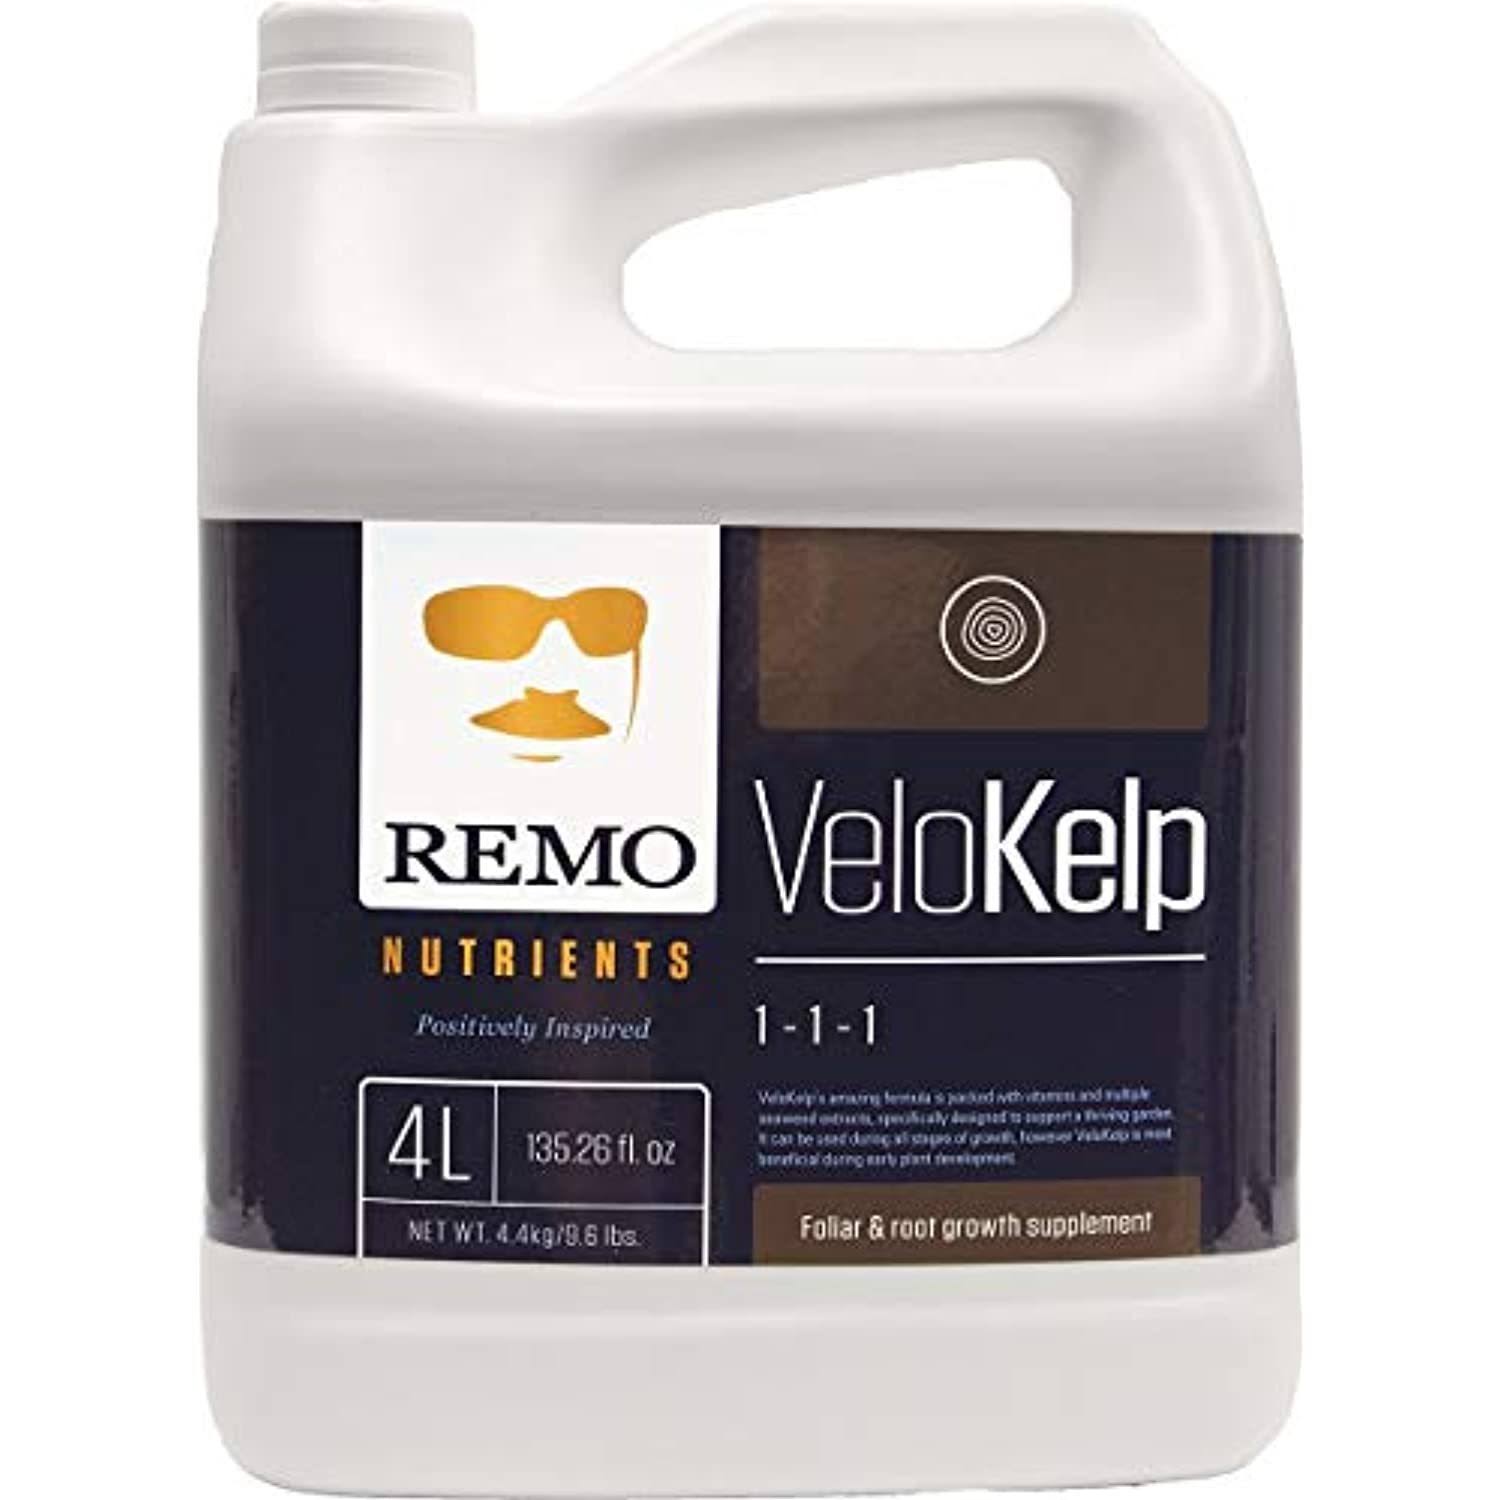 Remo Nutrient's VeloKelp - 4L